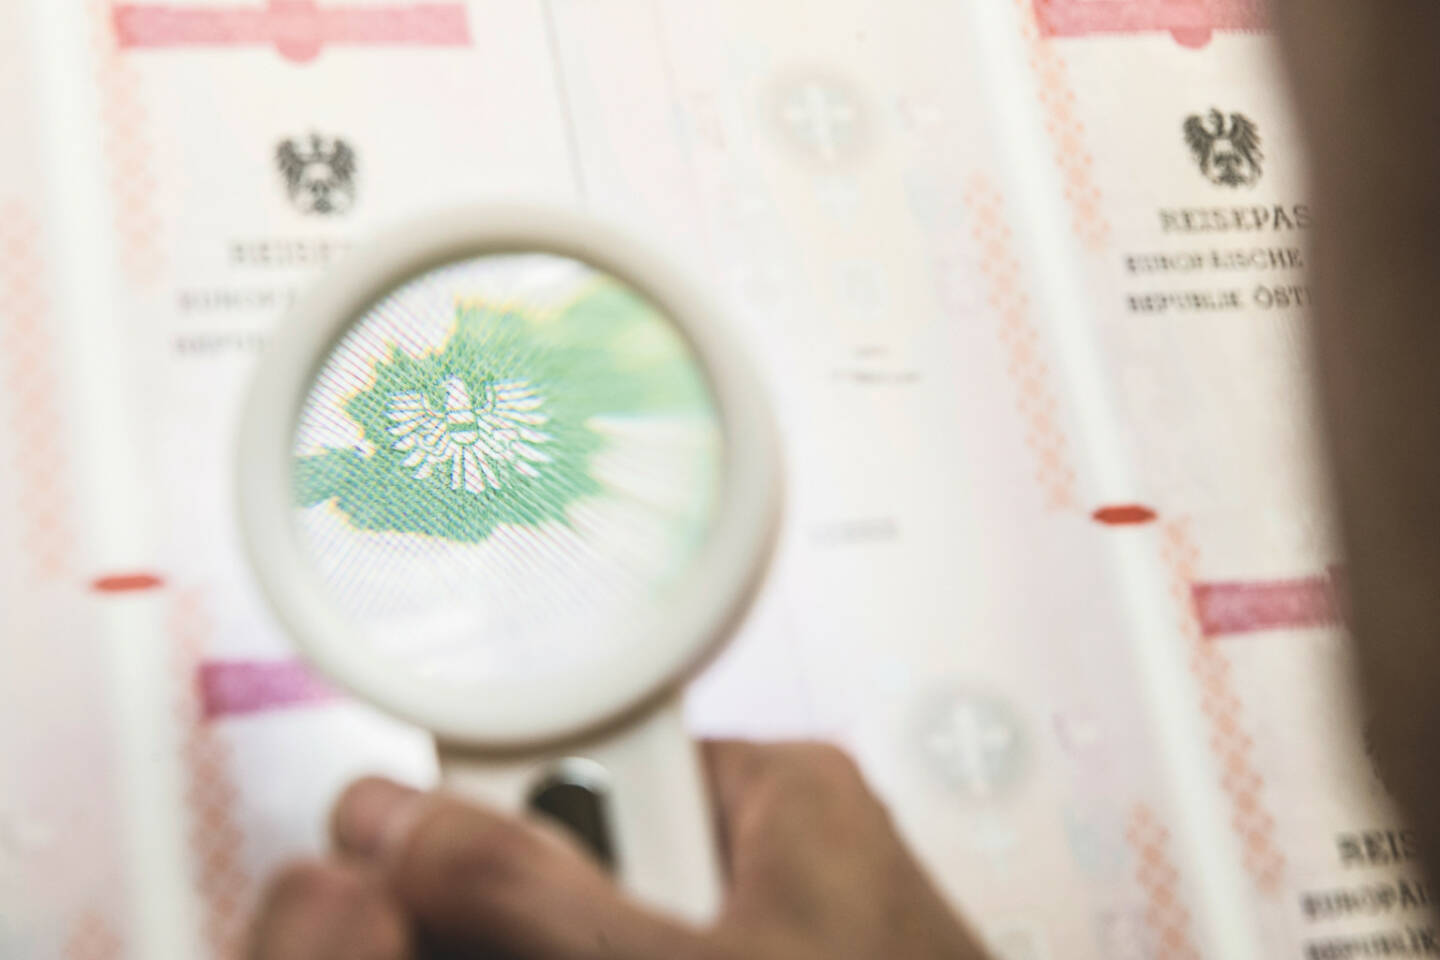 Österreichische Staatsdruckerei: Top-Performance der Staatsdruckerei bei EU-Reisedokumenten-Prüfung, Qualität von Identitätsdokumenten gerade heute wichtiger denn je; Credit: OeSD